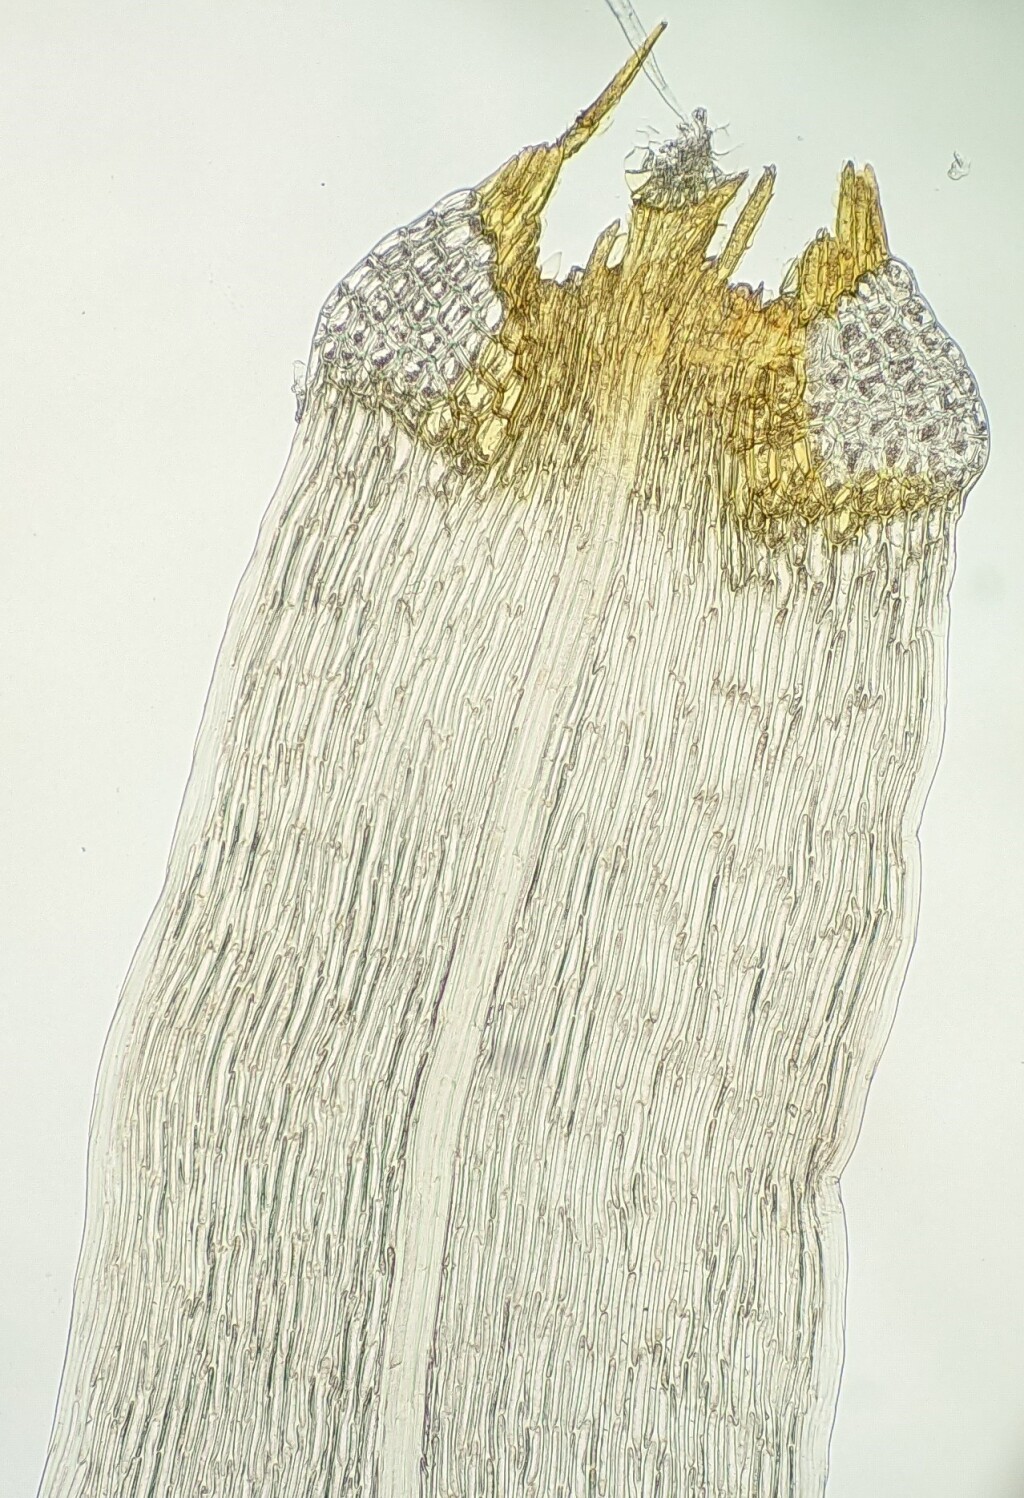 Dicranoloma fasciatum (hero image)